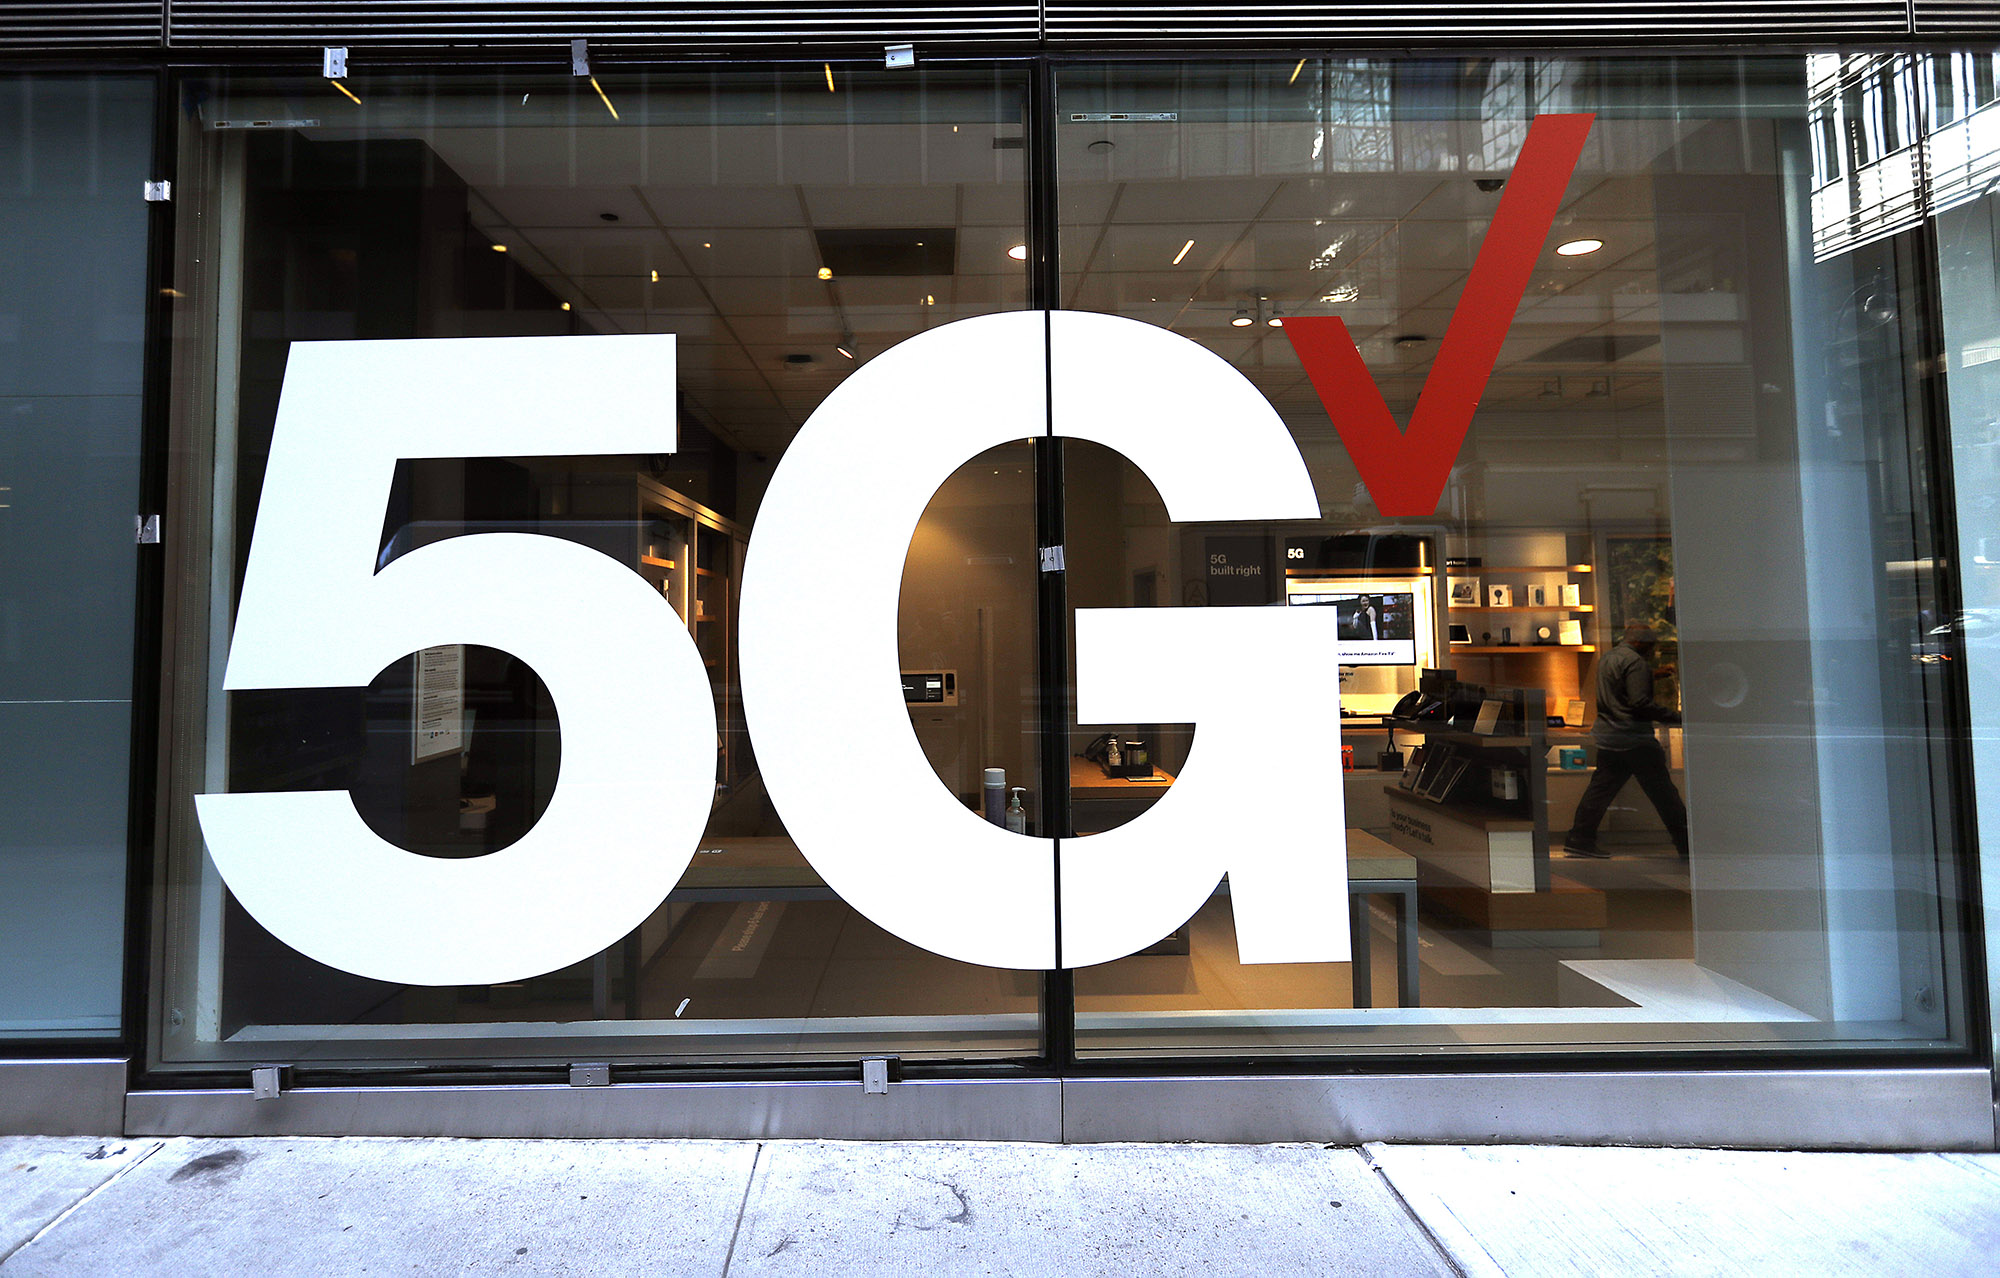 جلوی فروشگاه Verizon شبکه 5G را در شهر نیویورک نشان می دهد.